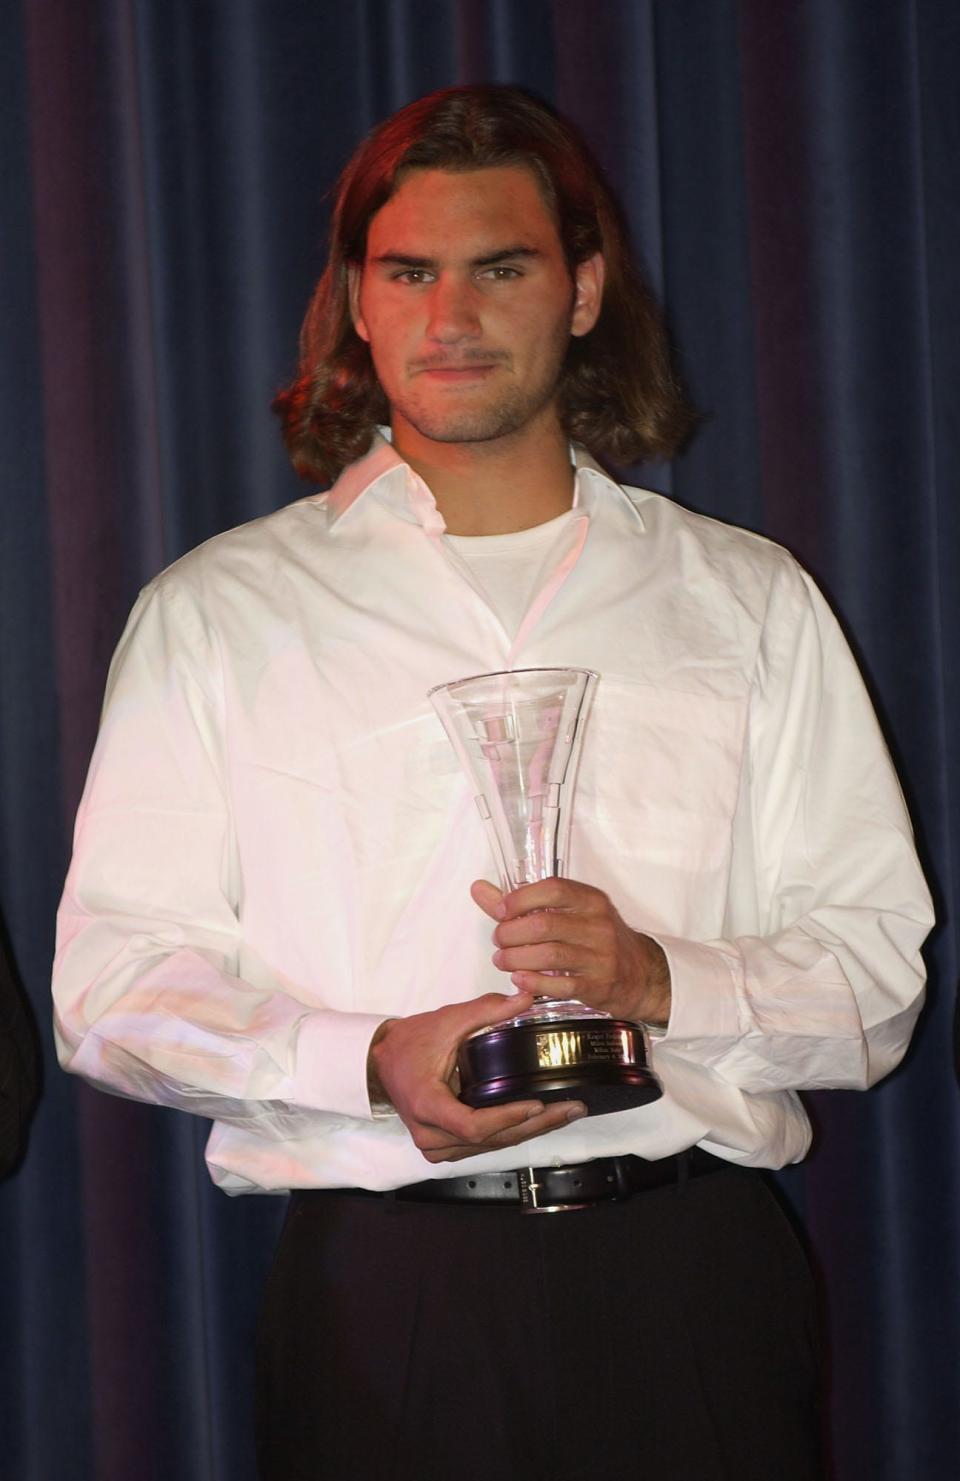 Roger Federer, age 20